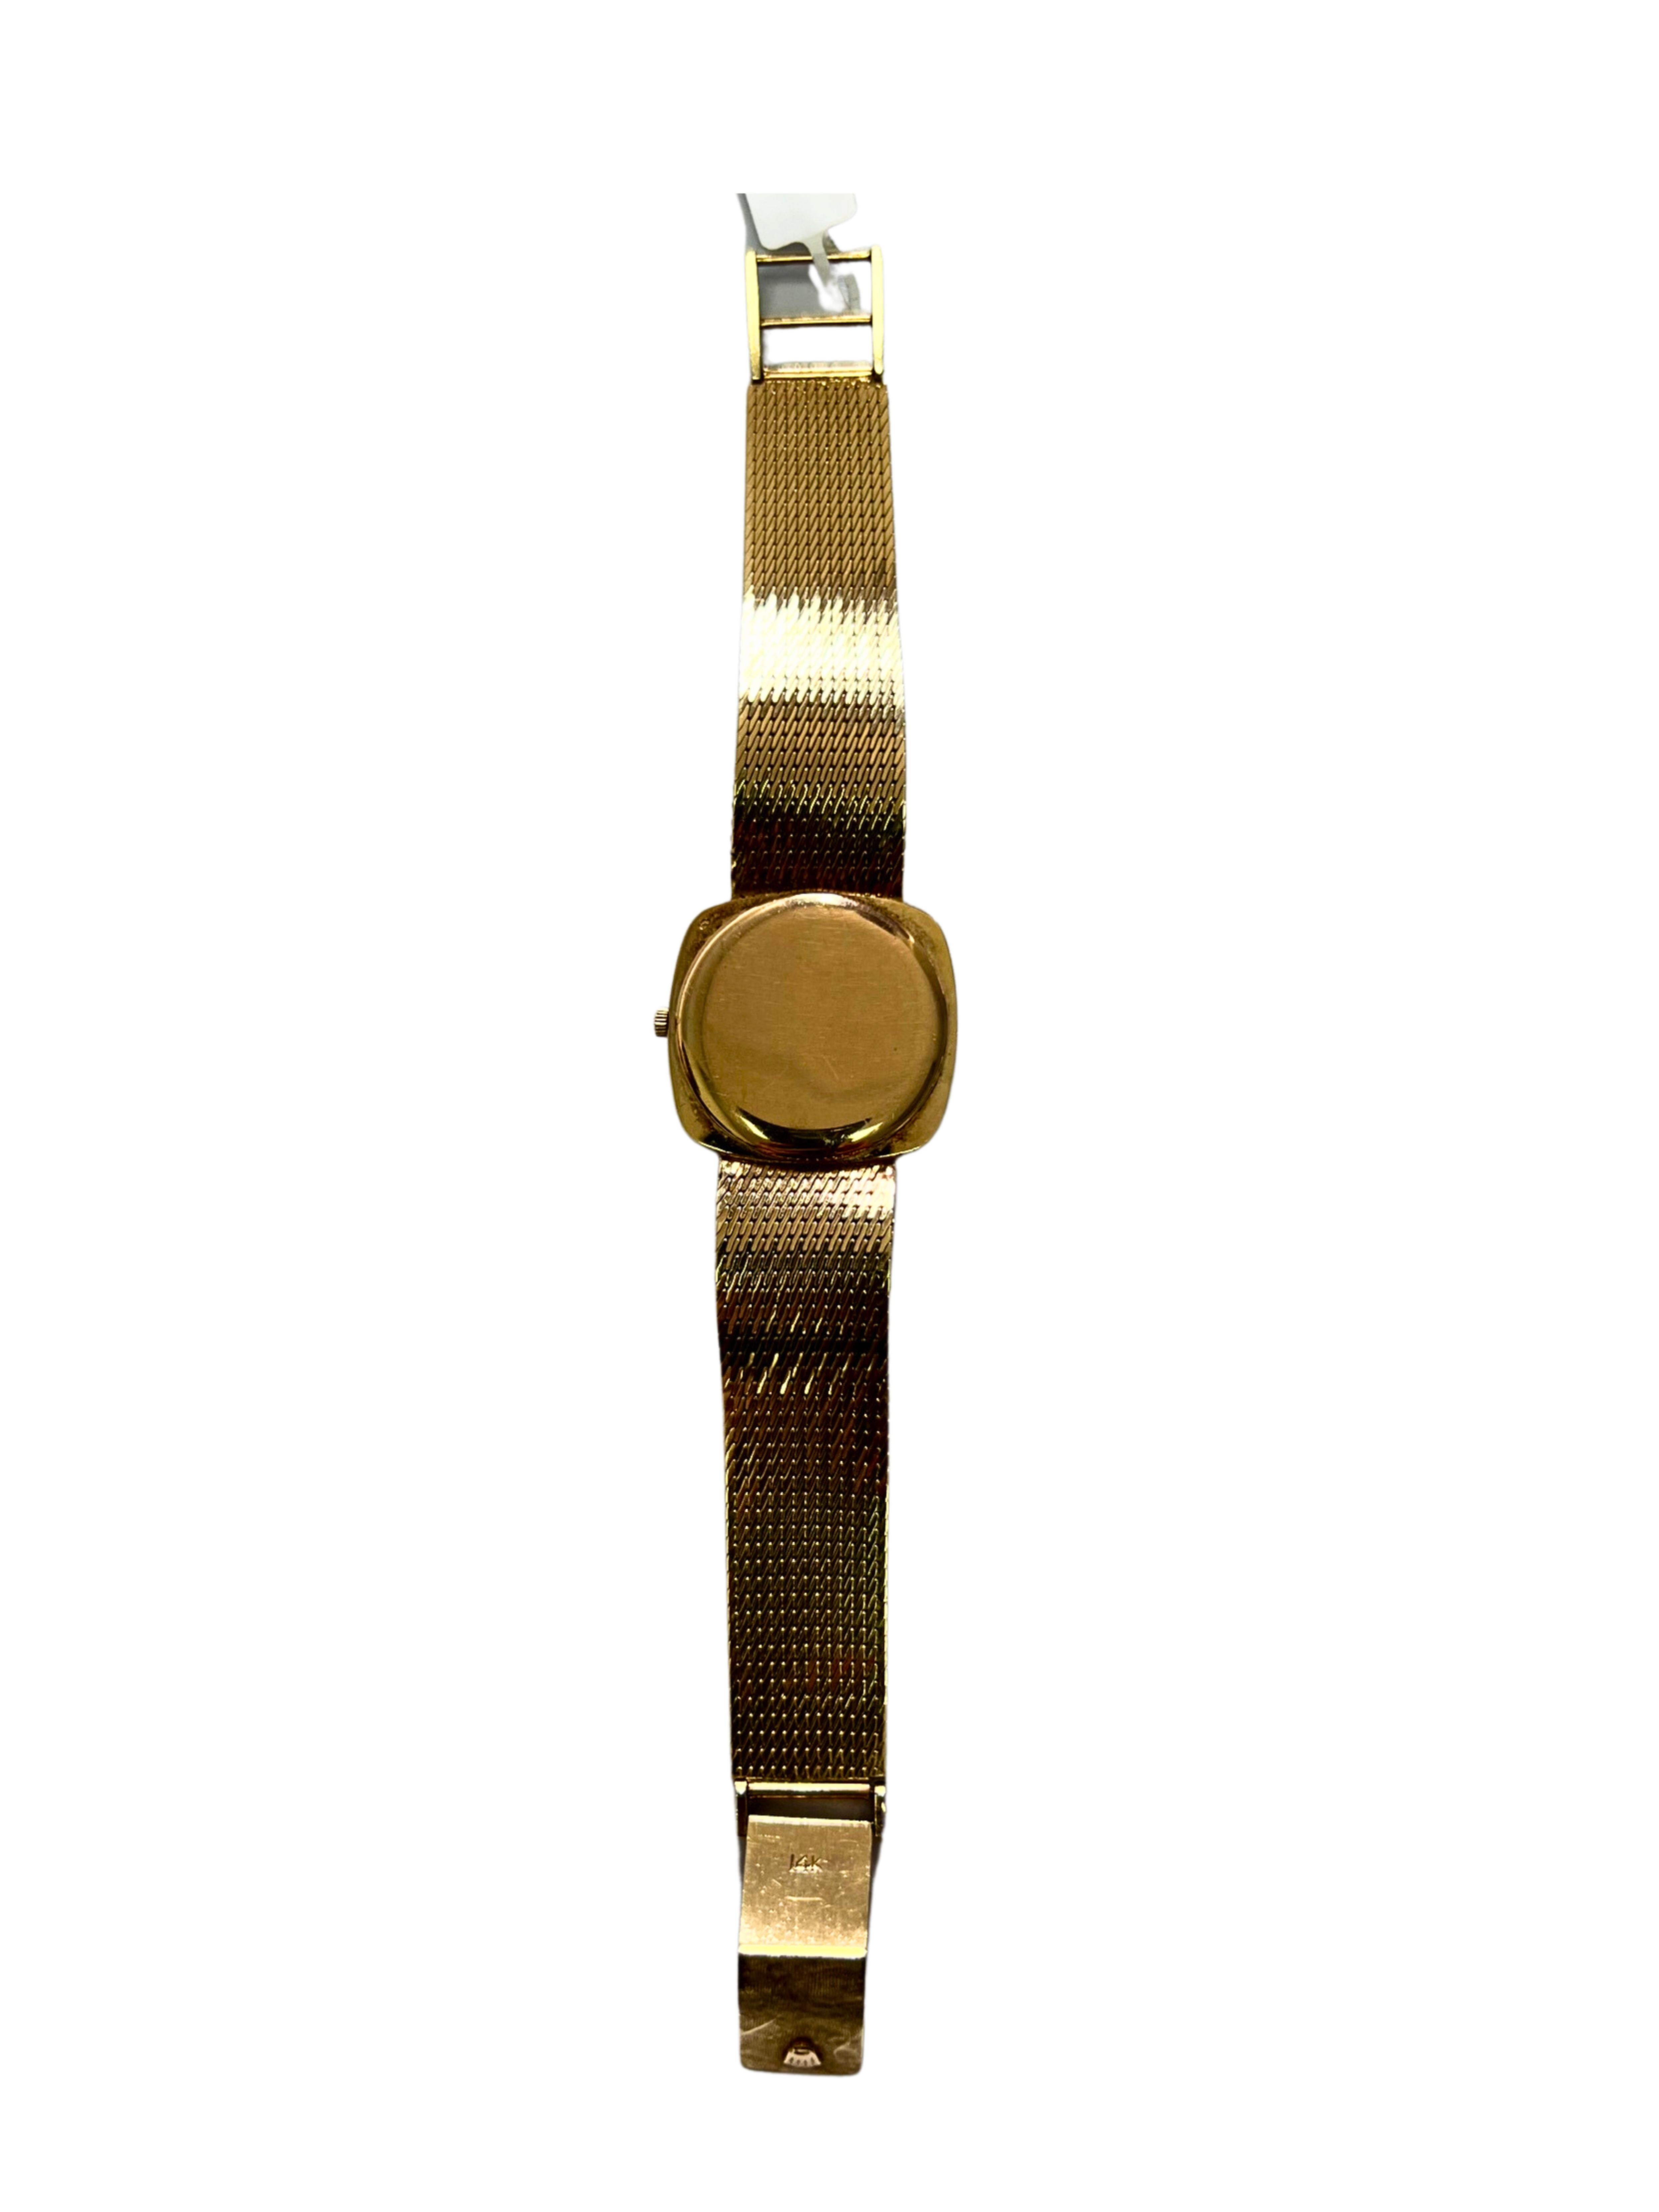 Rolex - Cellini Watch - 57 Grammes - 14k Gold - 7 inches length, 1970s origin, Cushion Shape Dial

La collection Rolex Cellini est un véritable concentré de raffinement. En raison de son élégance et de sa modernité, la Rolex Cellini devrait être